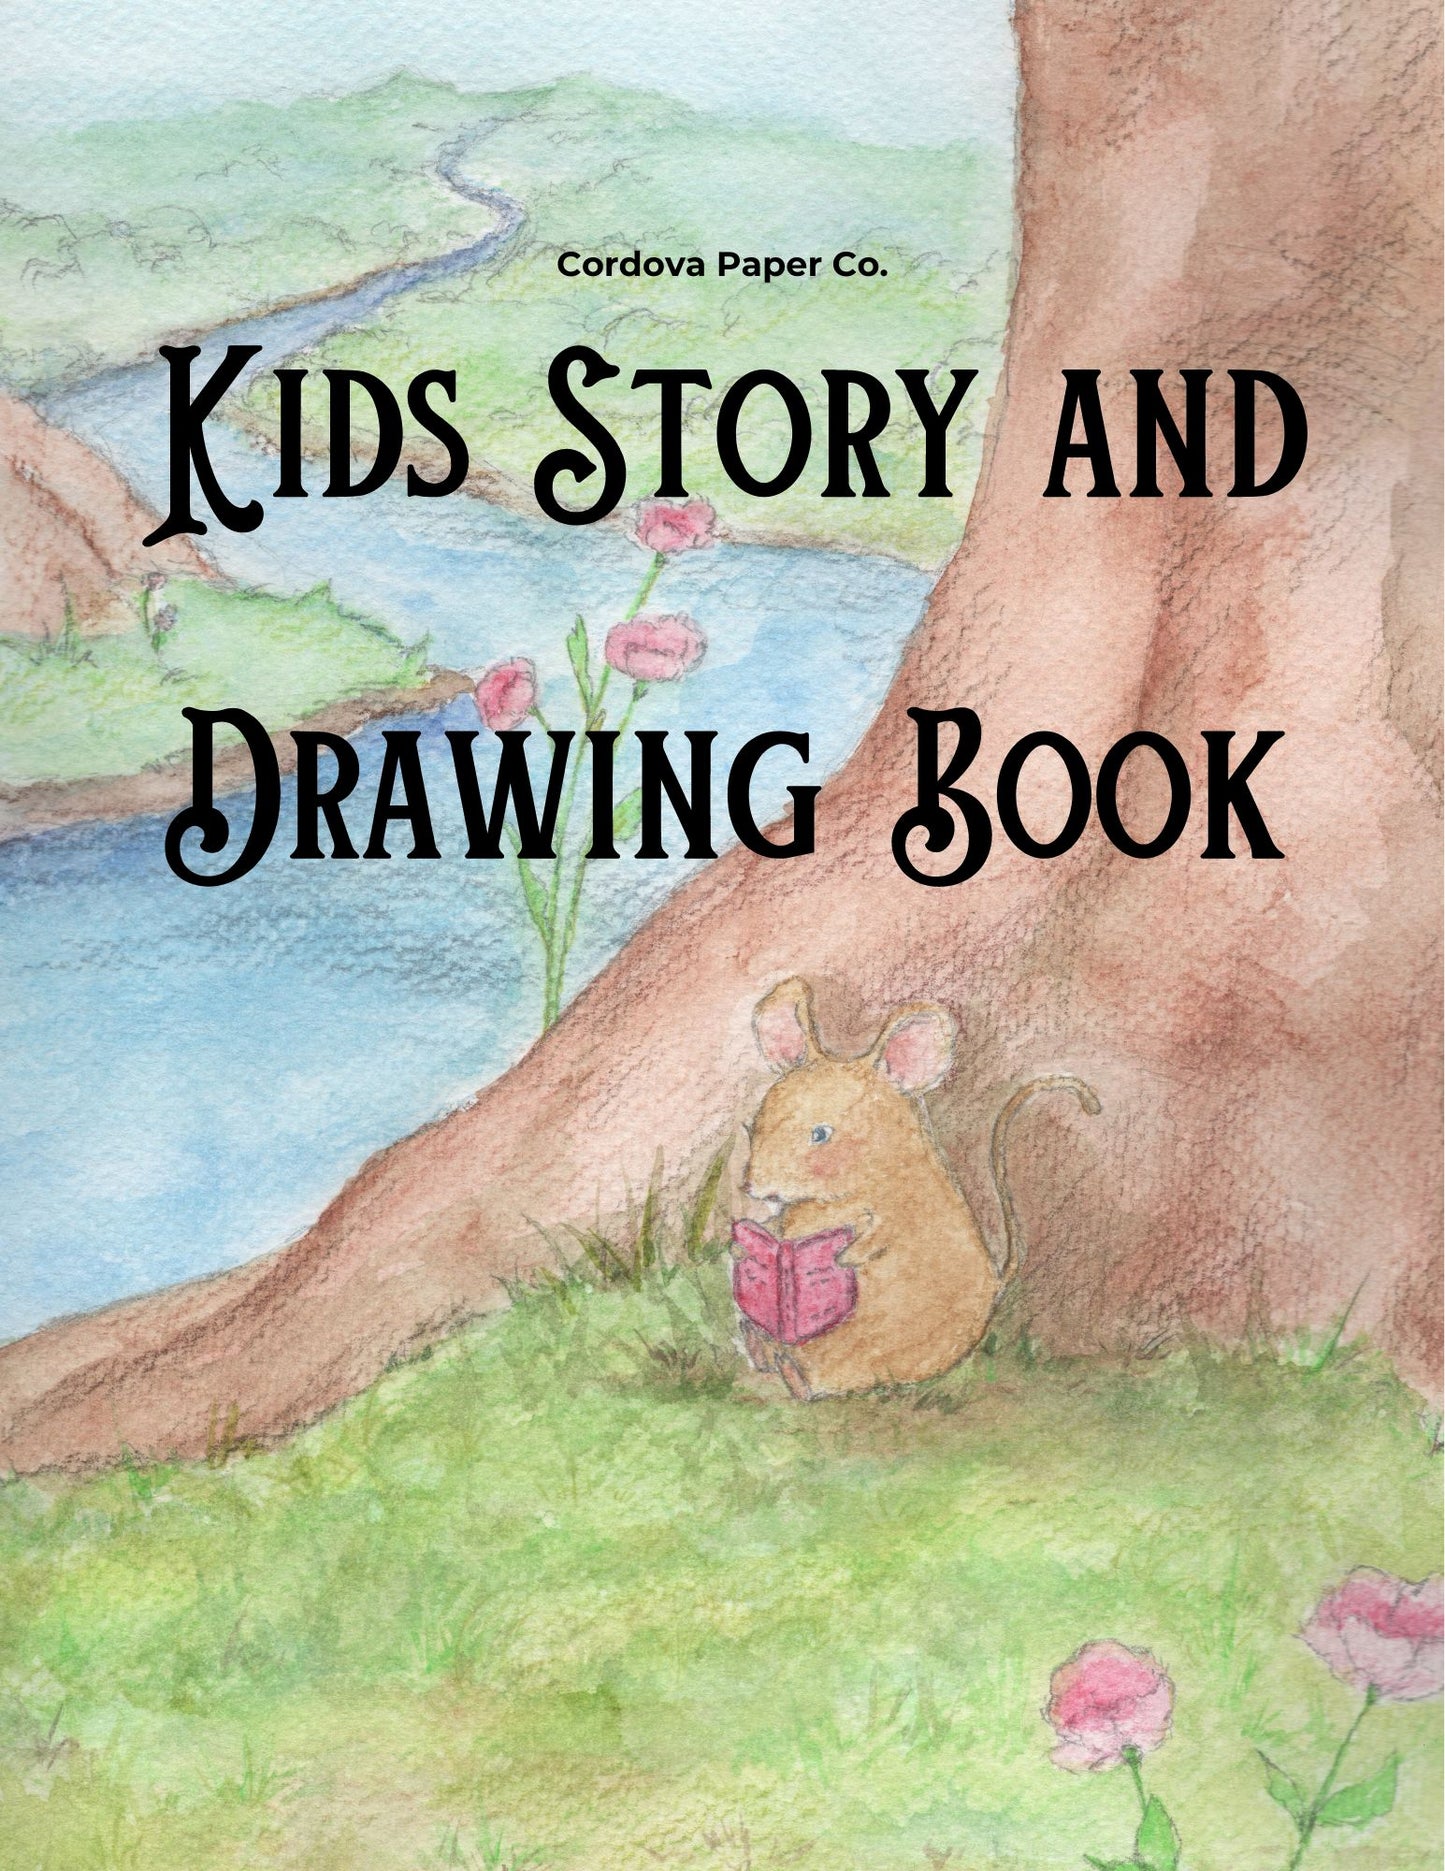 Libro de cuentos y dibujos para niños